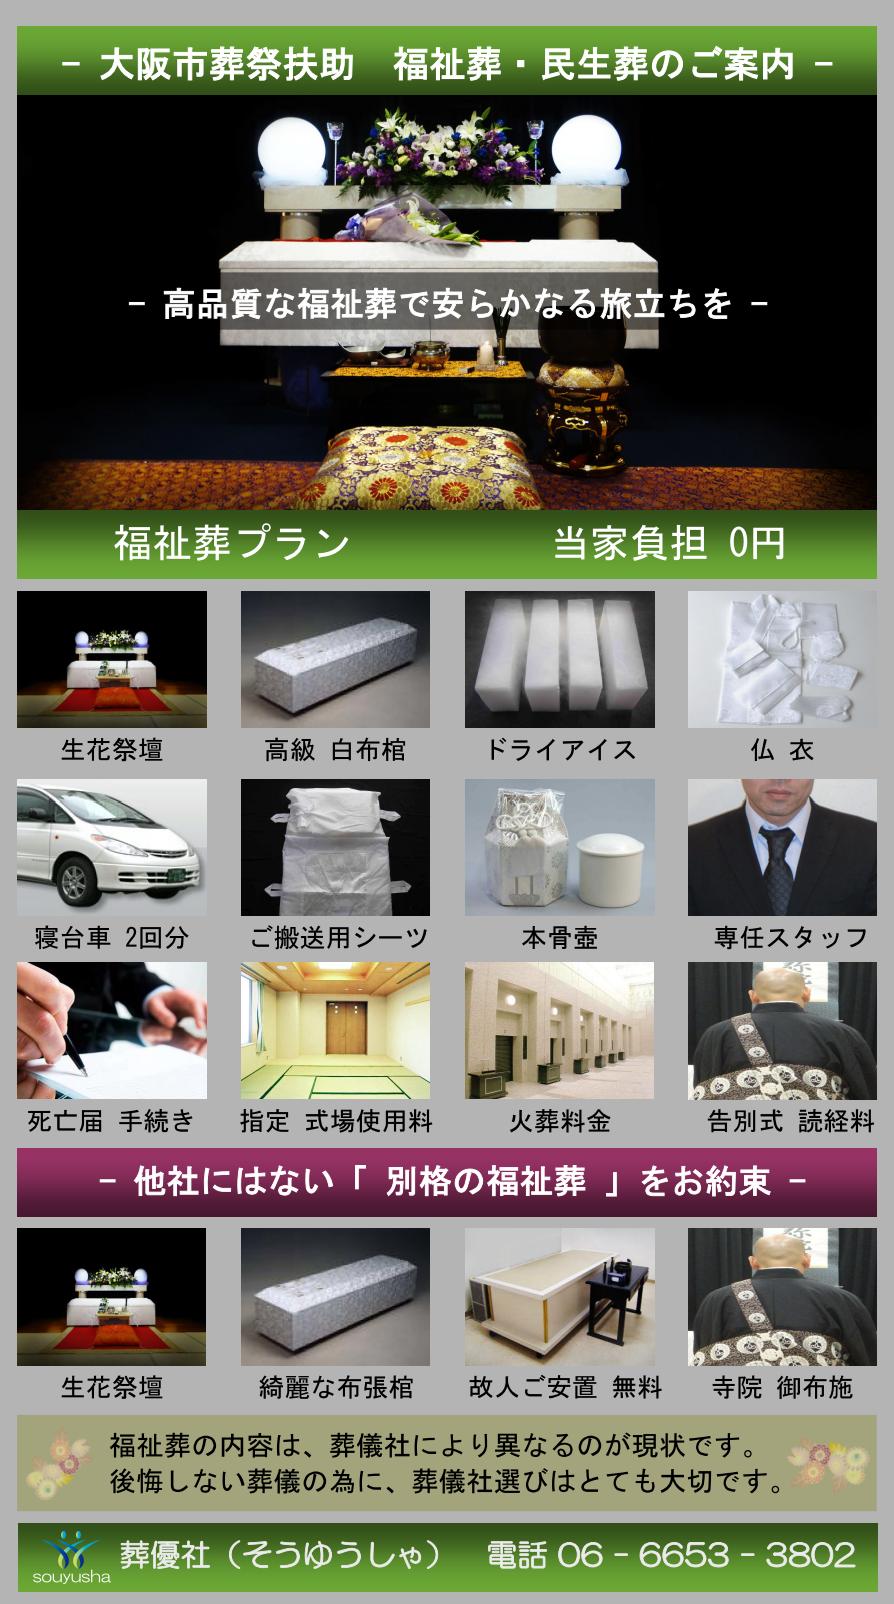 大阪市旭区でお寺様のお経が付いた福祉葬を提案する葬儀社は「福祉葬の葬優社」